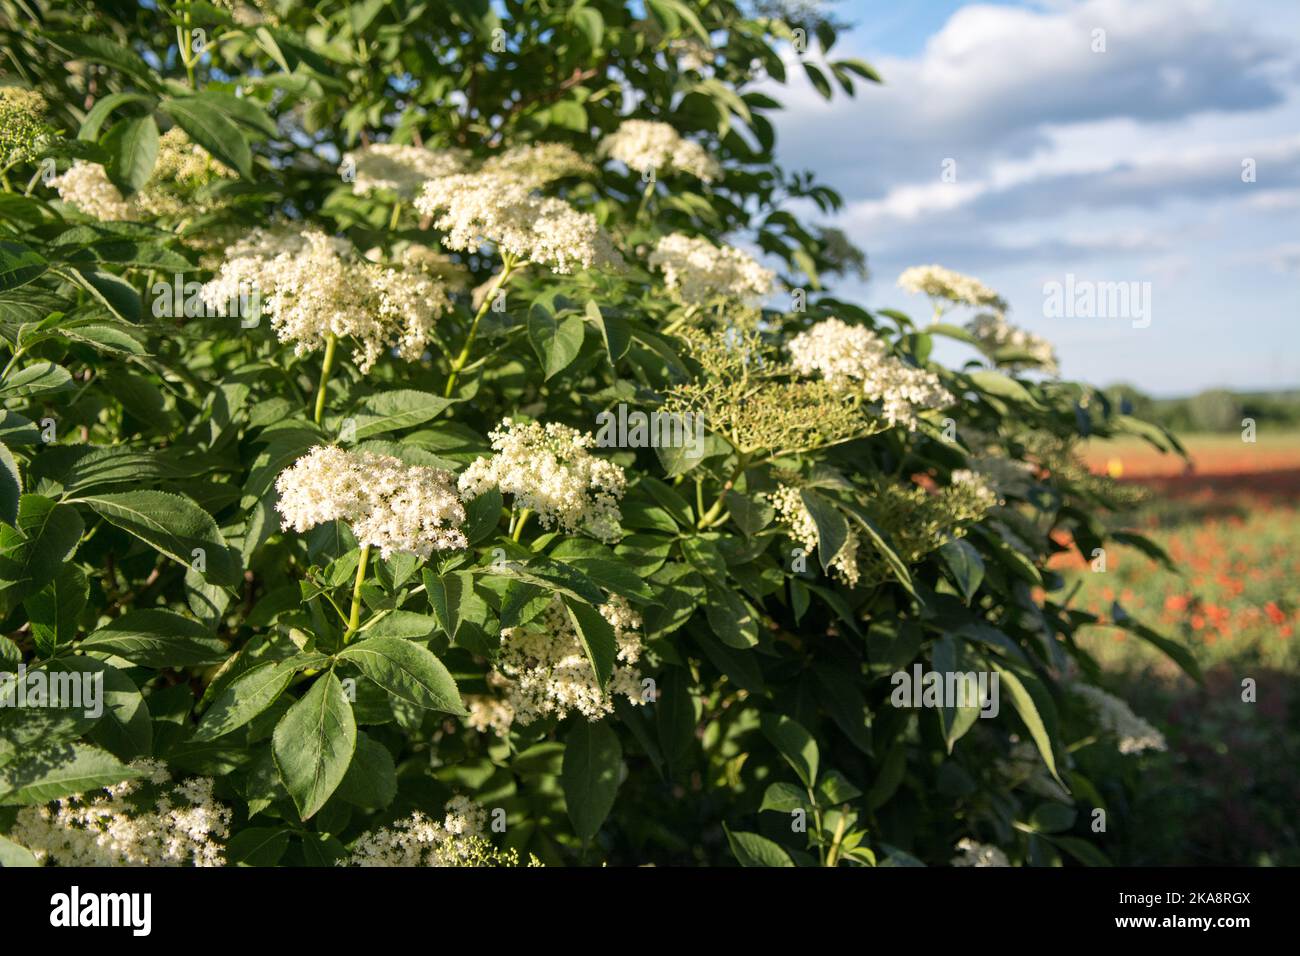 Elderflower bush blooming in spring Stock Photo